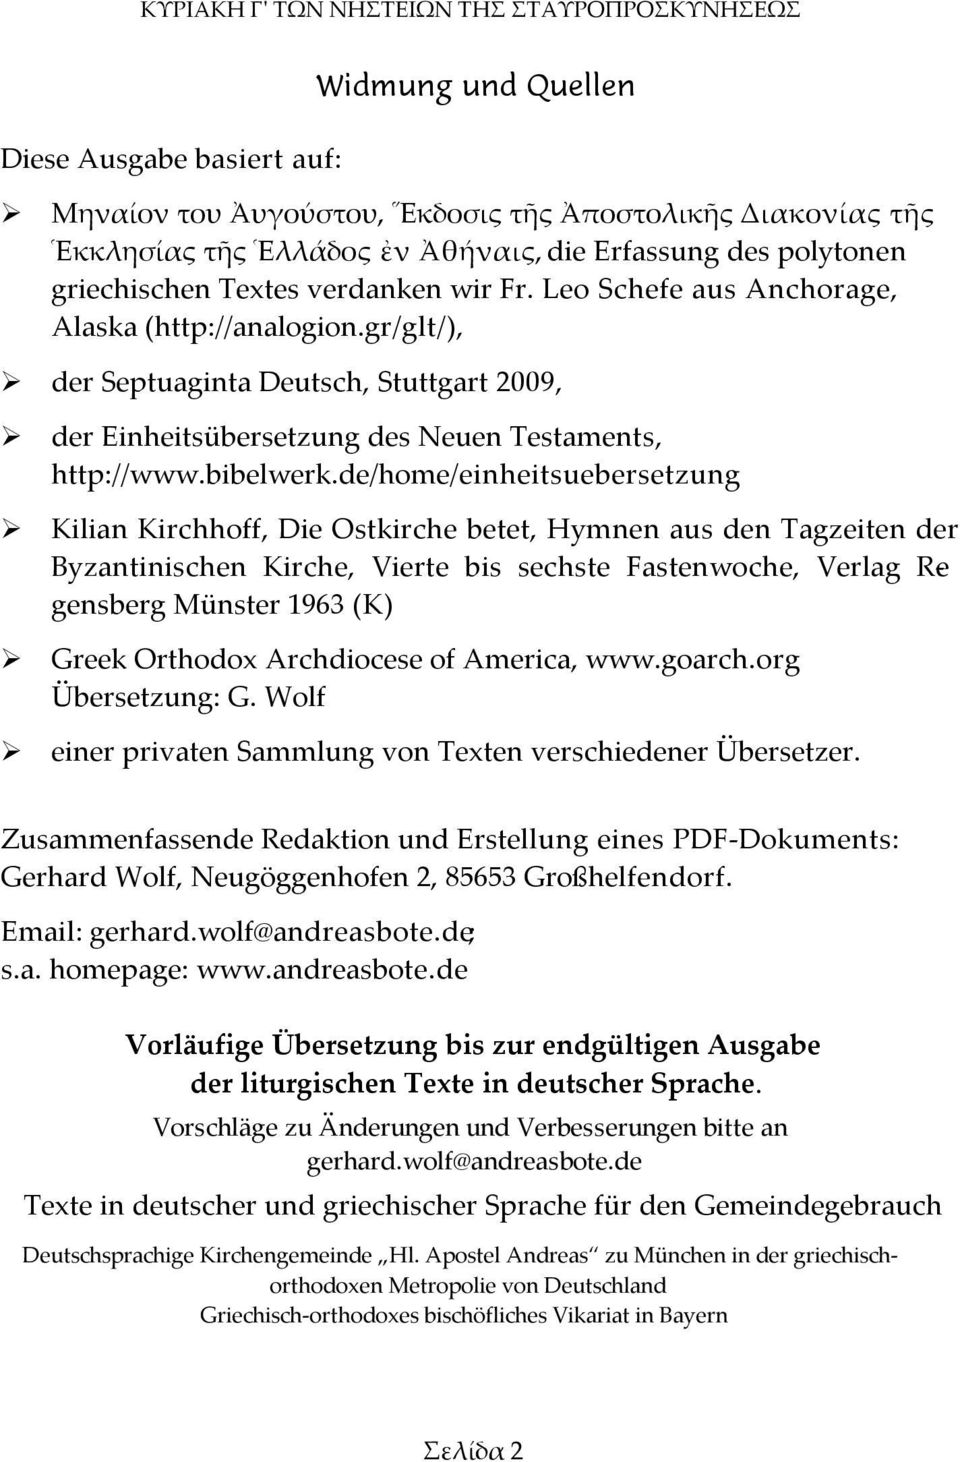 gr/glt/), der Septuaginta Deutsch, Stuttgart 2009, der Einheitsübersetzung des Neuen Testaments, http://www.bibelwerk.